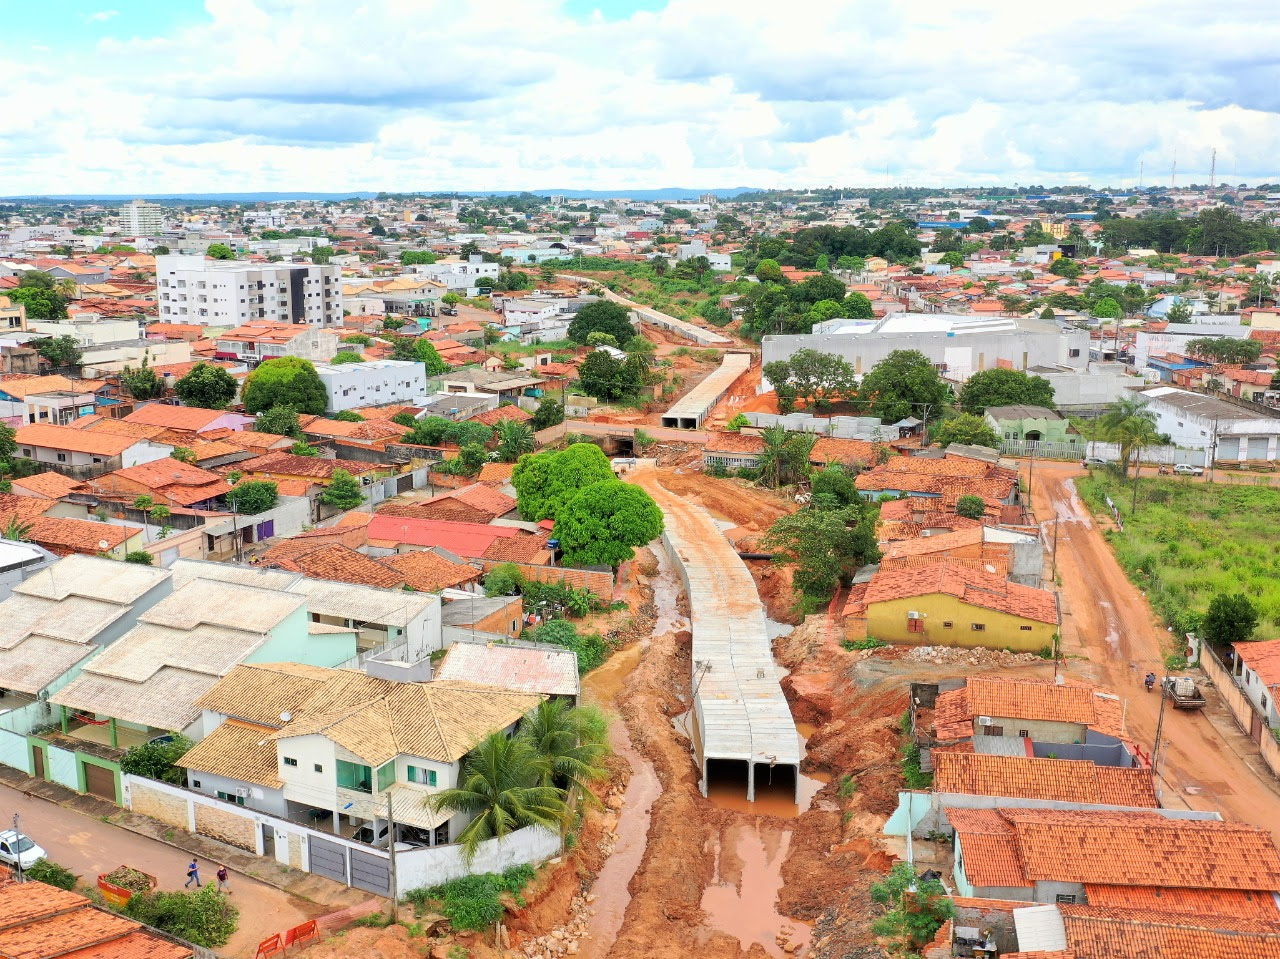 Durante a construção da maior obra de sustentabilidade, logística e mobilidade urbana do Tocantins, a Via Norte de Araguaína, foram identificadas e fechadas mais de 400 ligações de esgoto clandestino nos córregos Neblina e Canindé (Foto: Marcos Sandes)